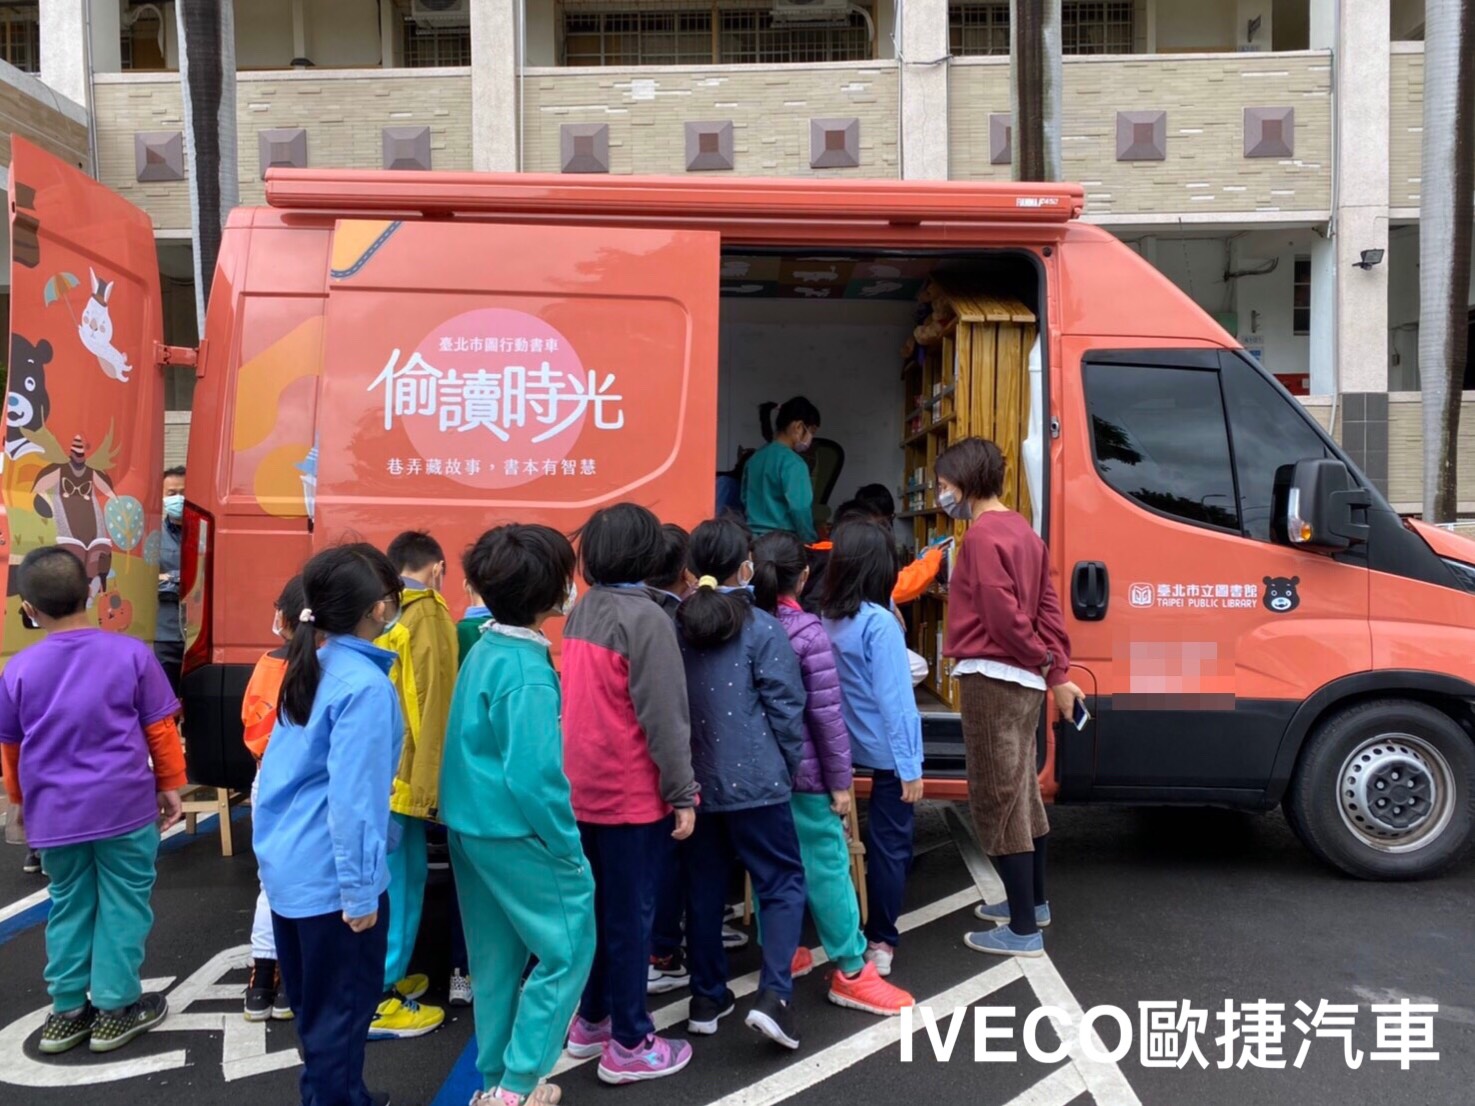 台北市立圖書館行動書車-iveco行動改裝